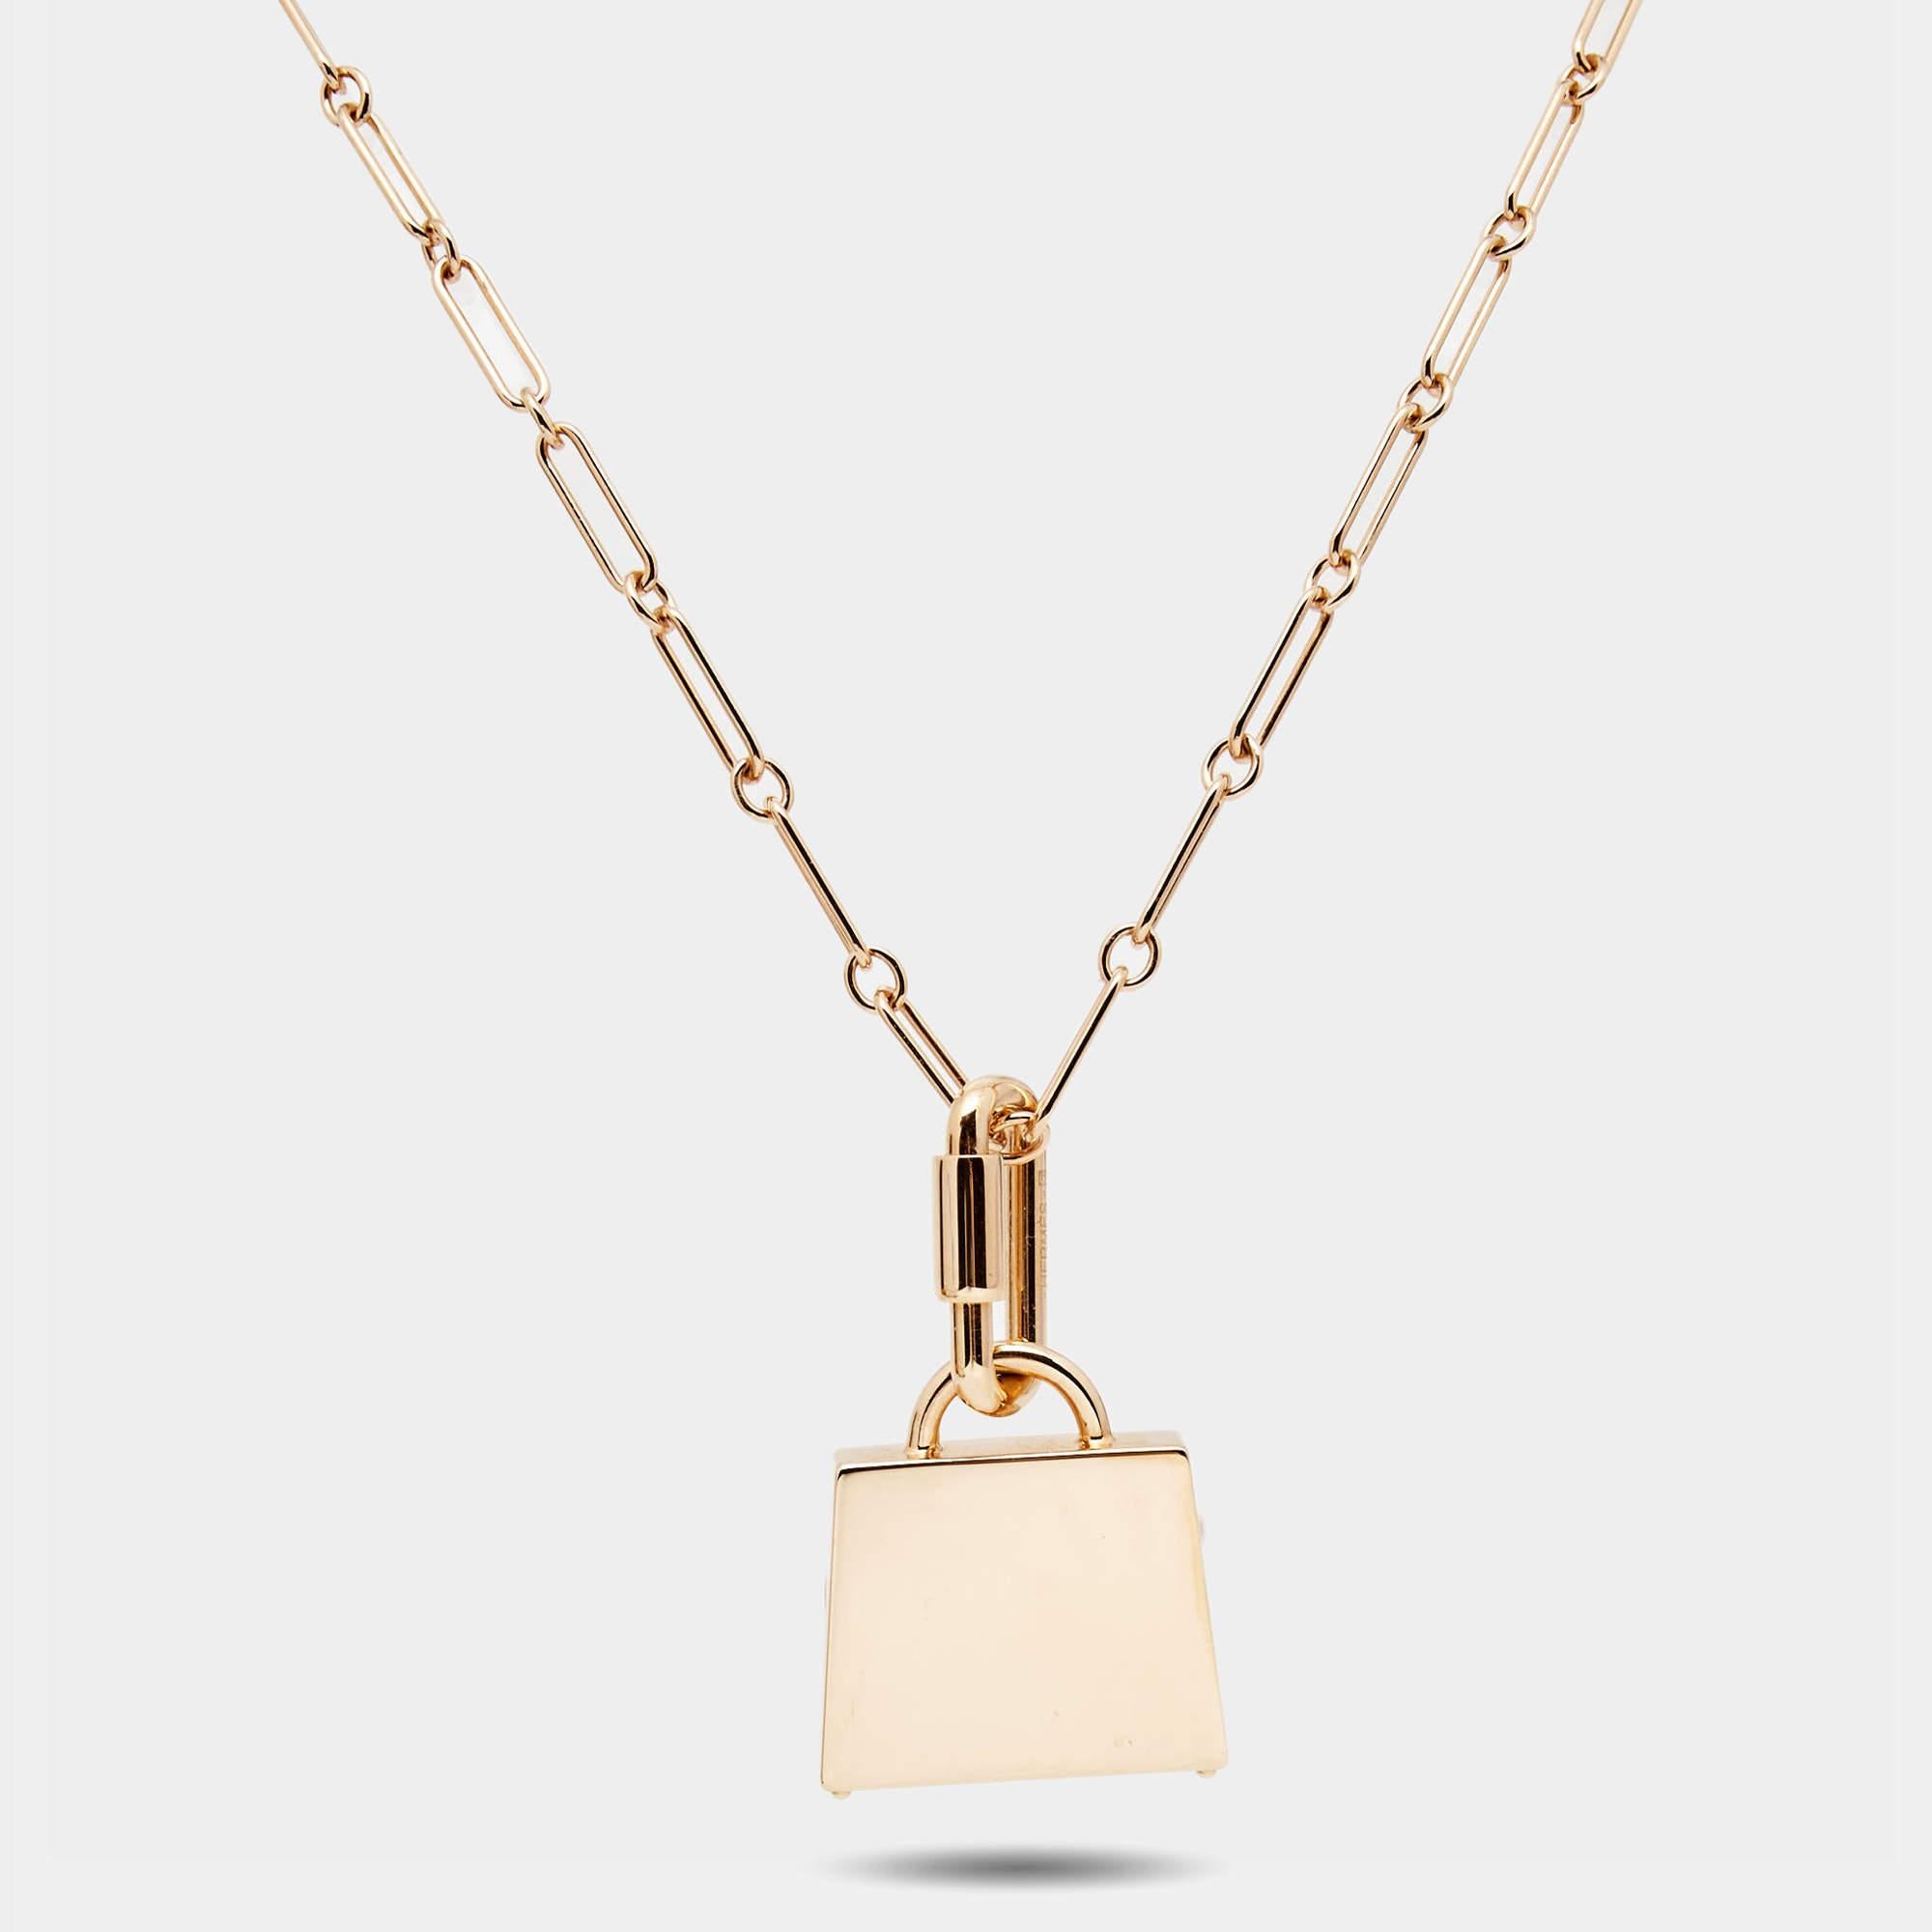 Le collier Hermès est un bijou exquis. Fabriqué avec précision, il présente une luxueuse chaîne plaquée or ornée d'un délicat pendentif en forme de sac Kelly emblématique, mettant en valeur l'élégance et la sophistication intemporelles de la